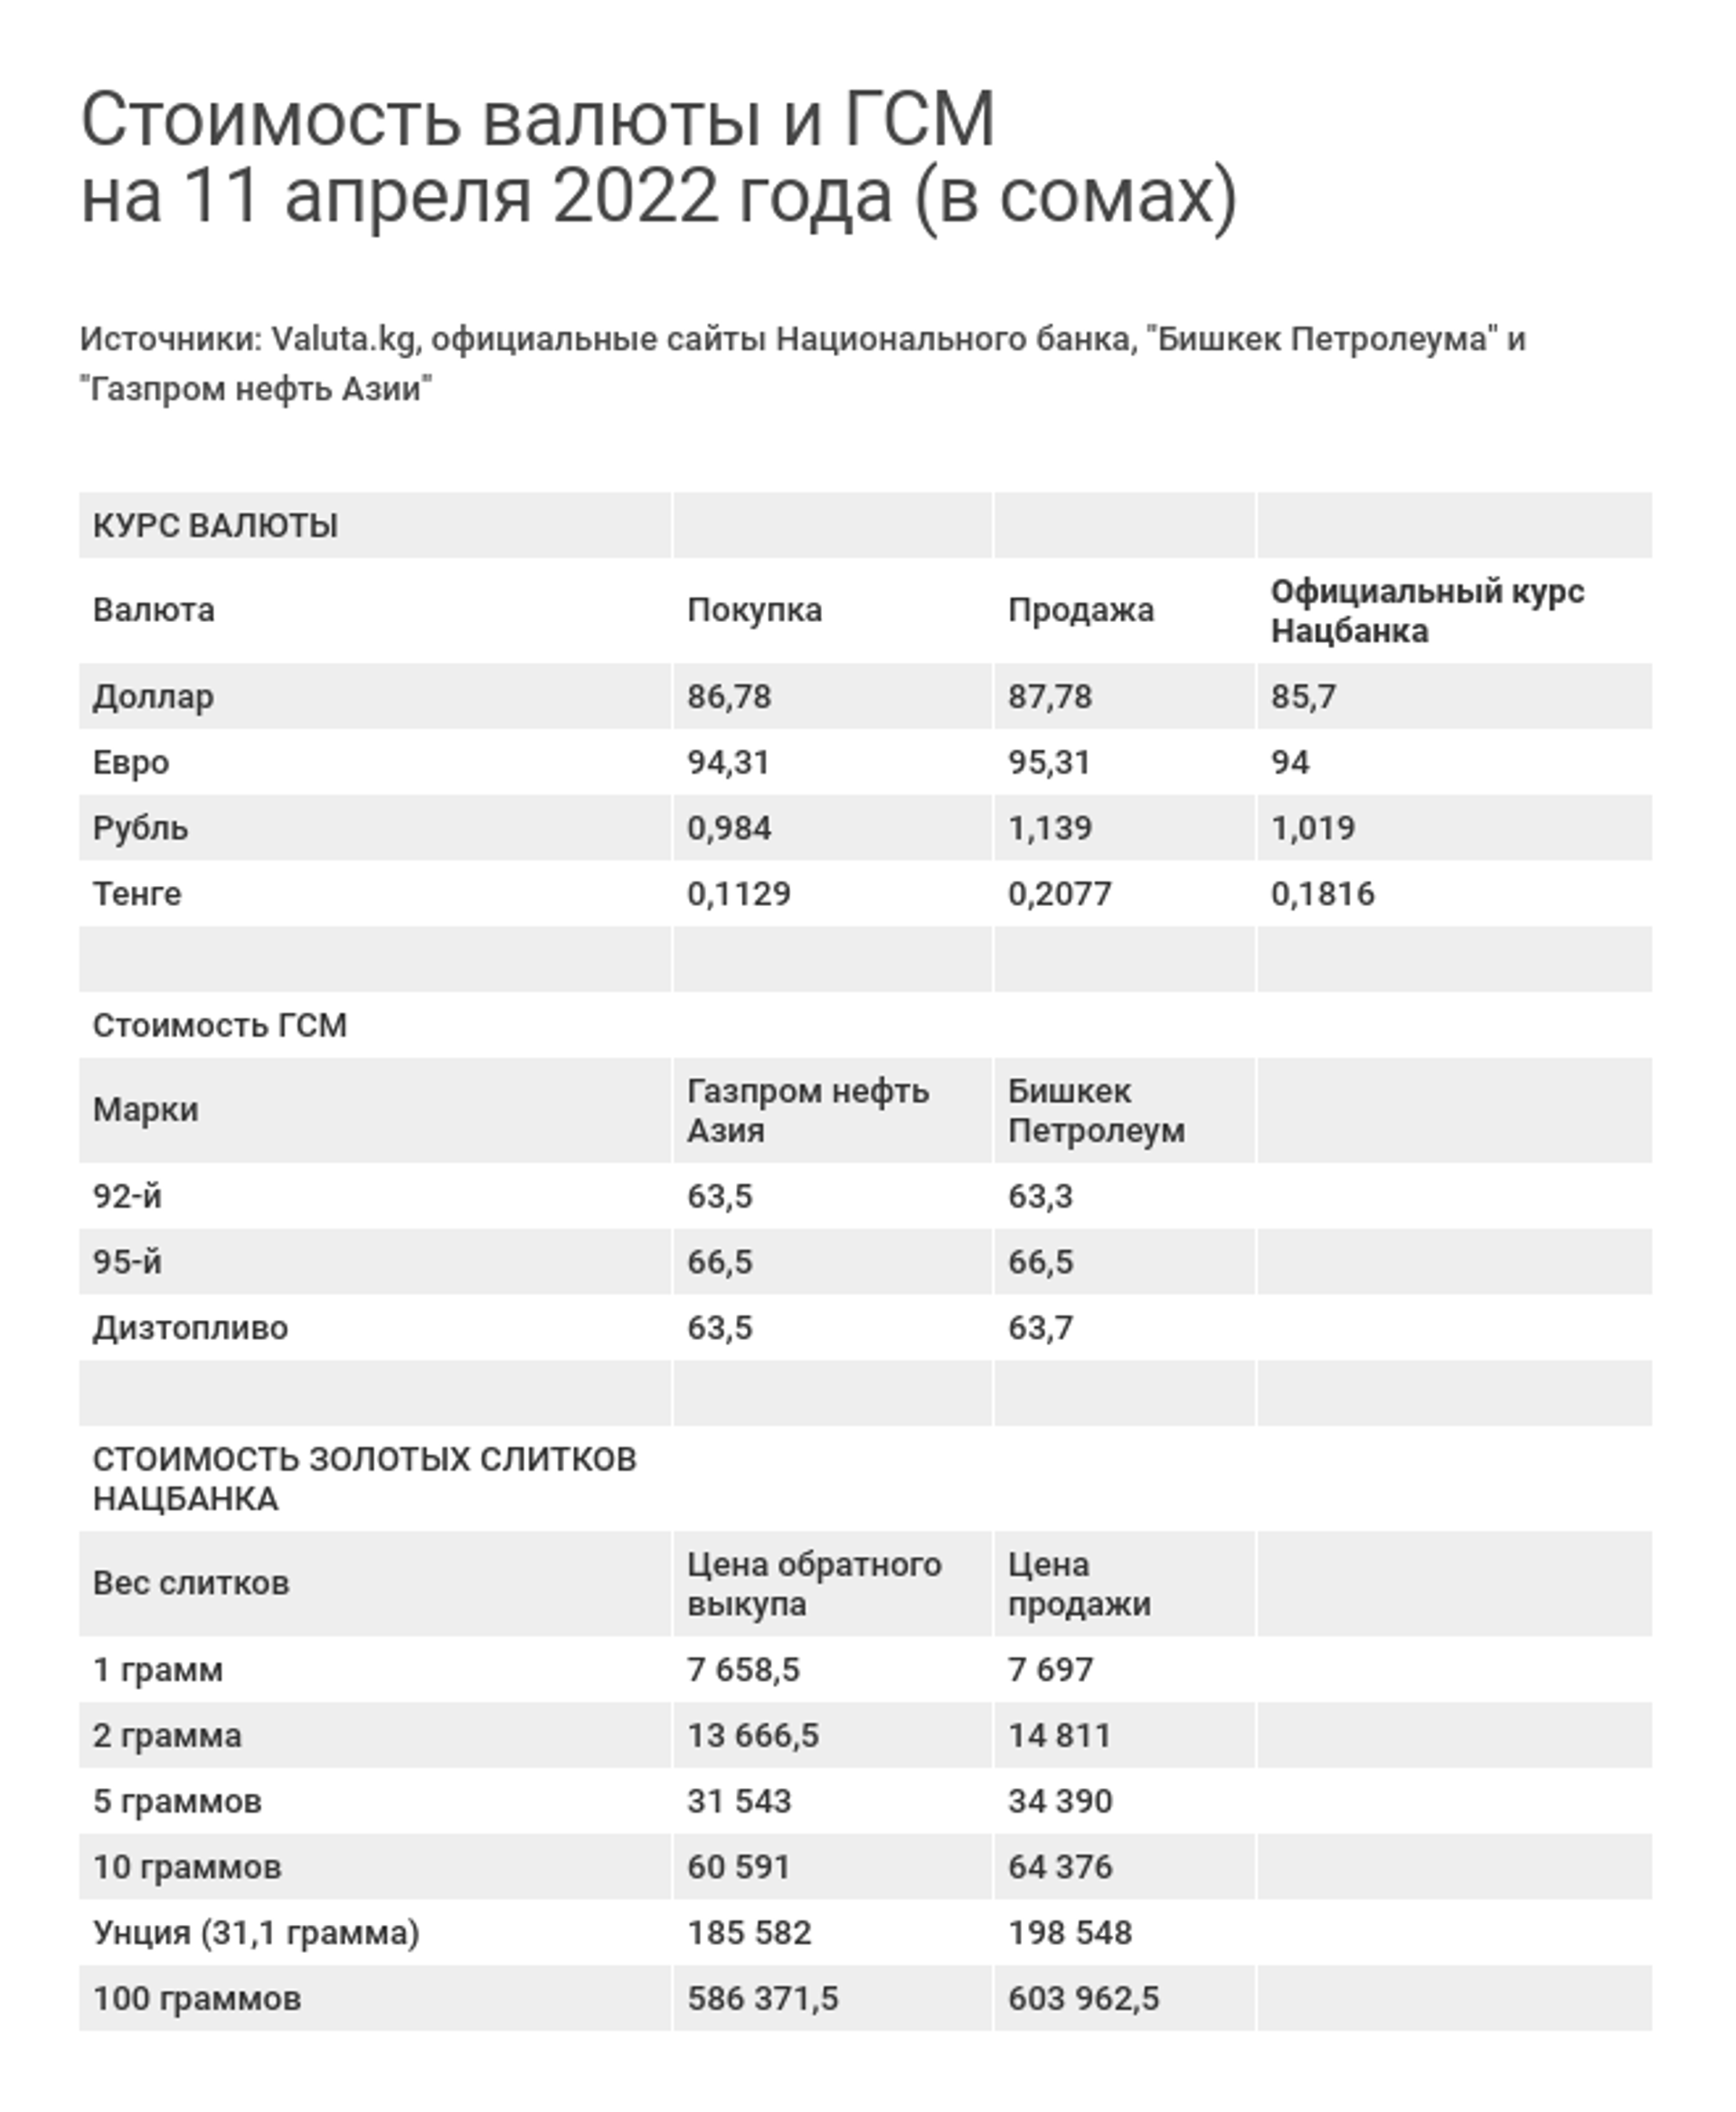 Стоимость валюты и ГСМ на 11 апреля 2022 года (в сомах) - Sputnik Кыргызстан, 1920, 11.04.2022